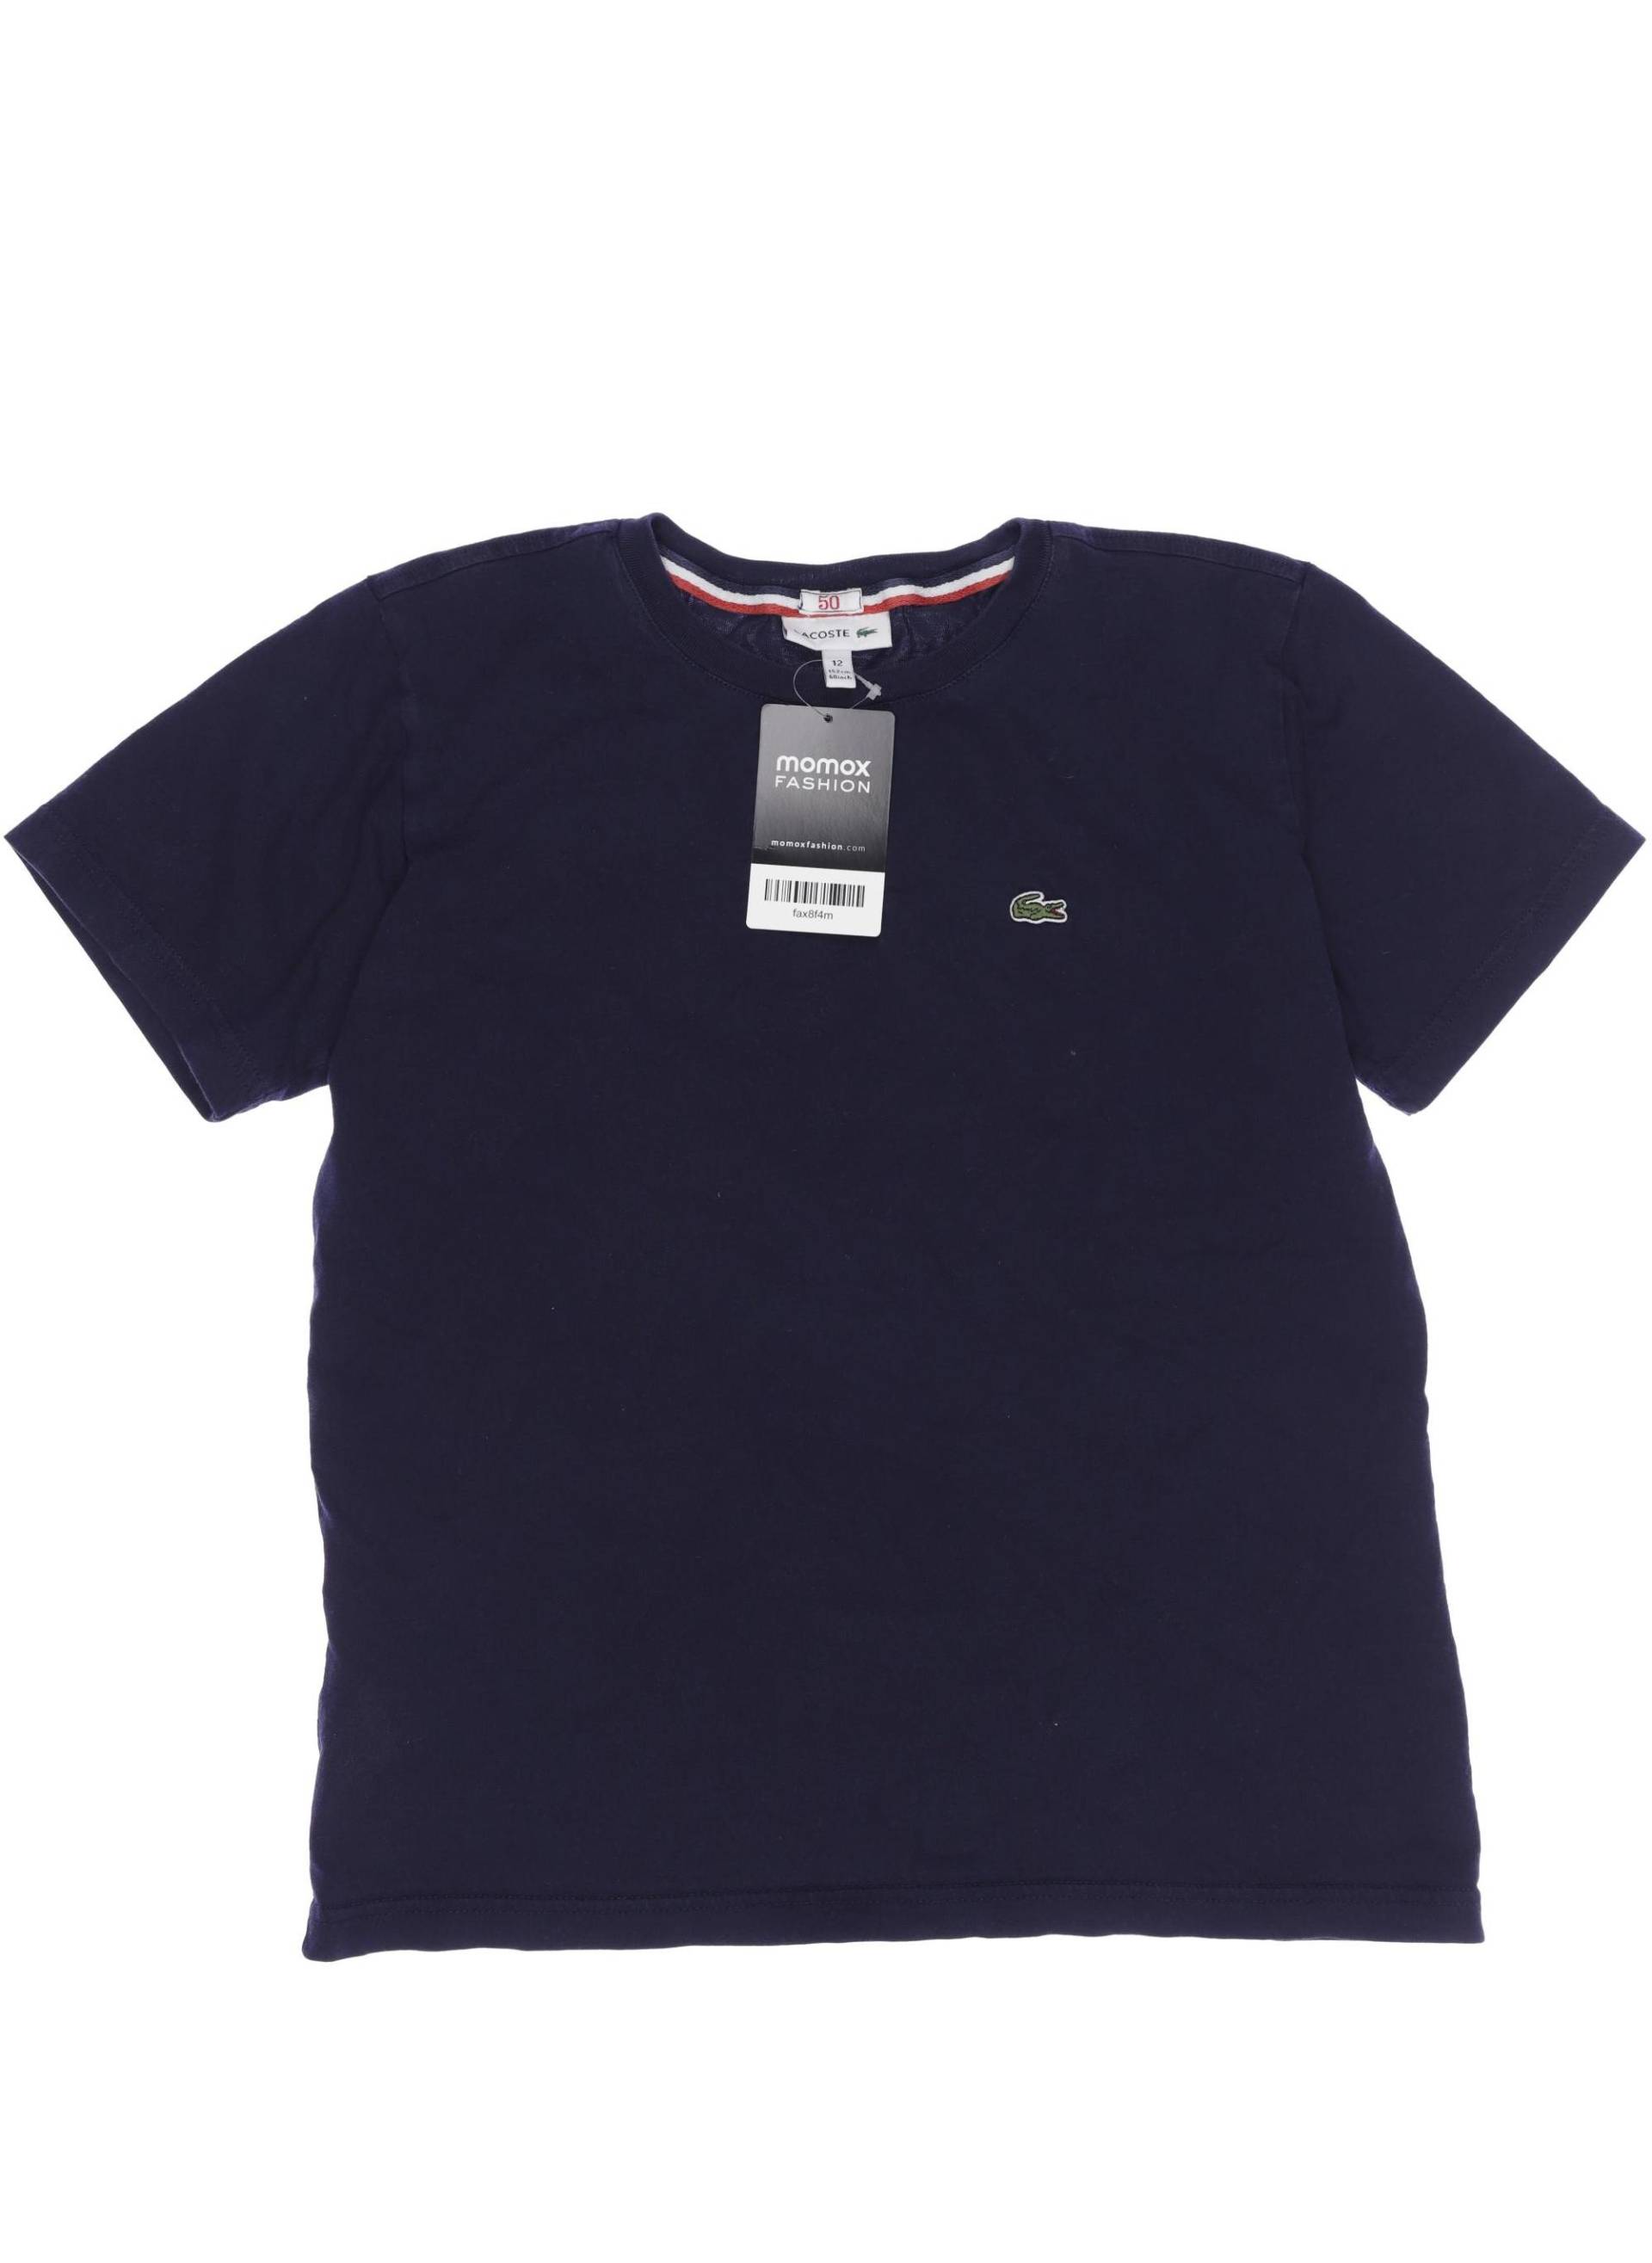 Lacoste Herren T-Shirt, marineblau, Gr. 152 von Lacoste